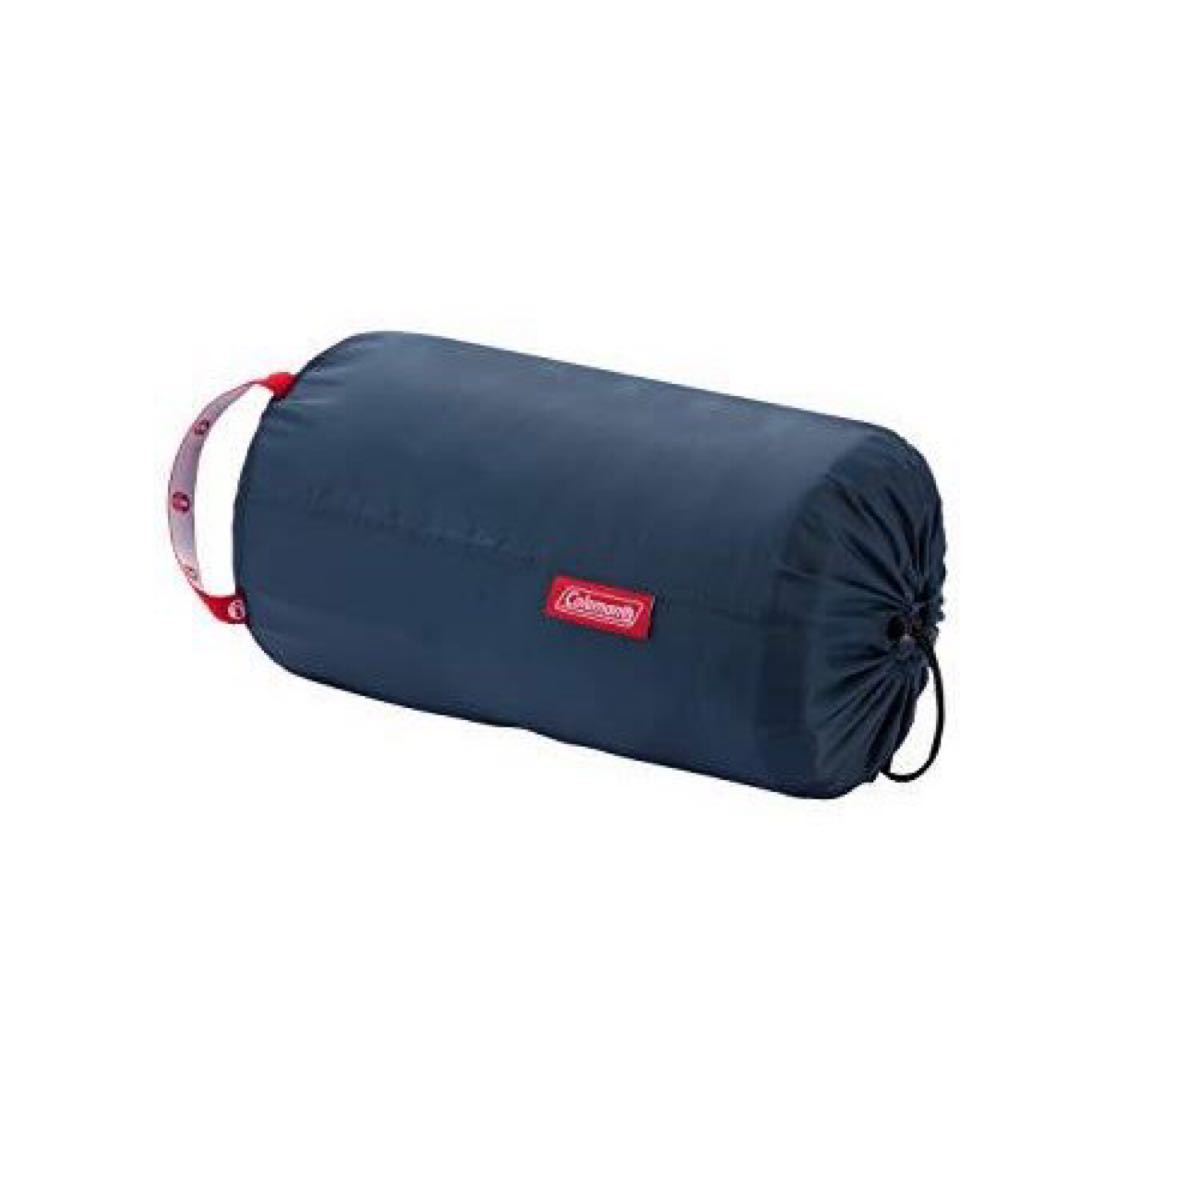 コールマン(Coleman) 寝袋 パフォーマーIII C5 使用可能温度5度 封筒型 オレンジ 2000034774